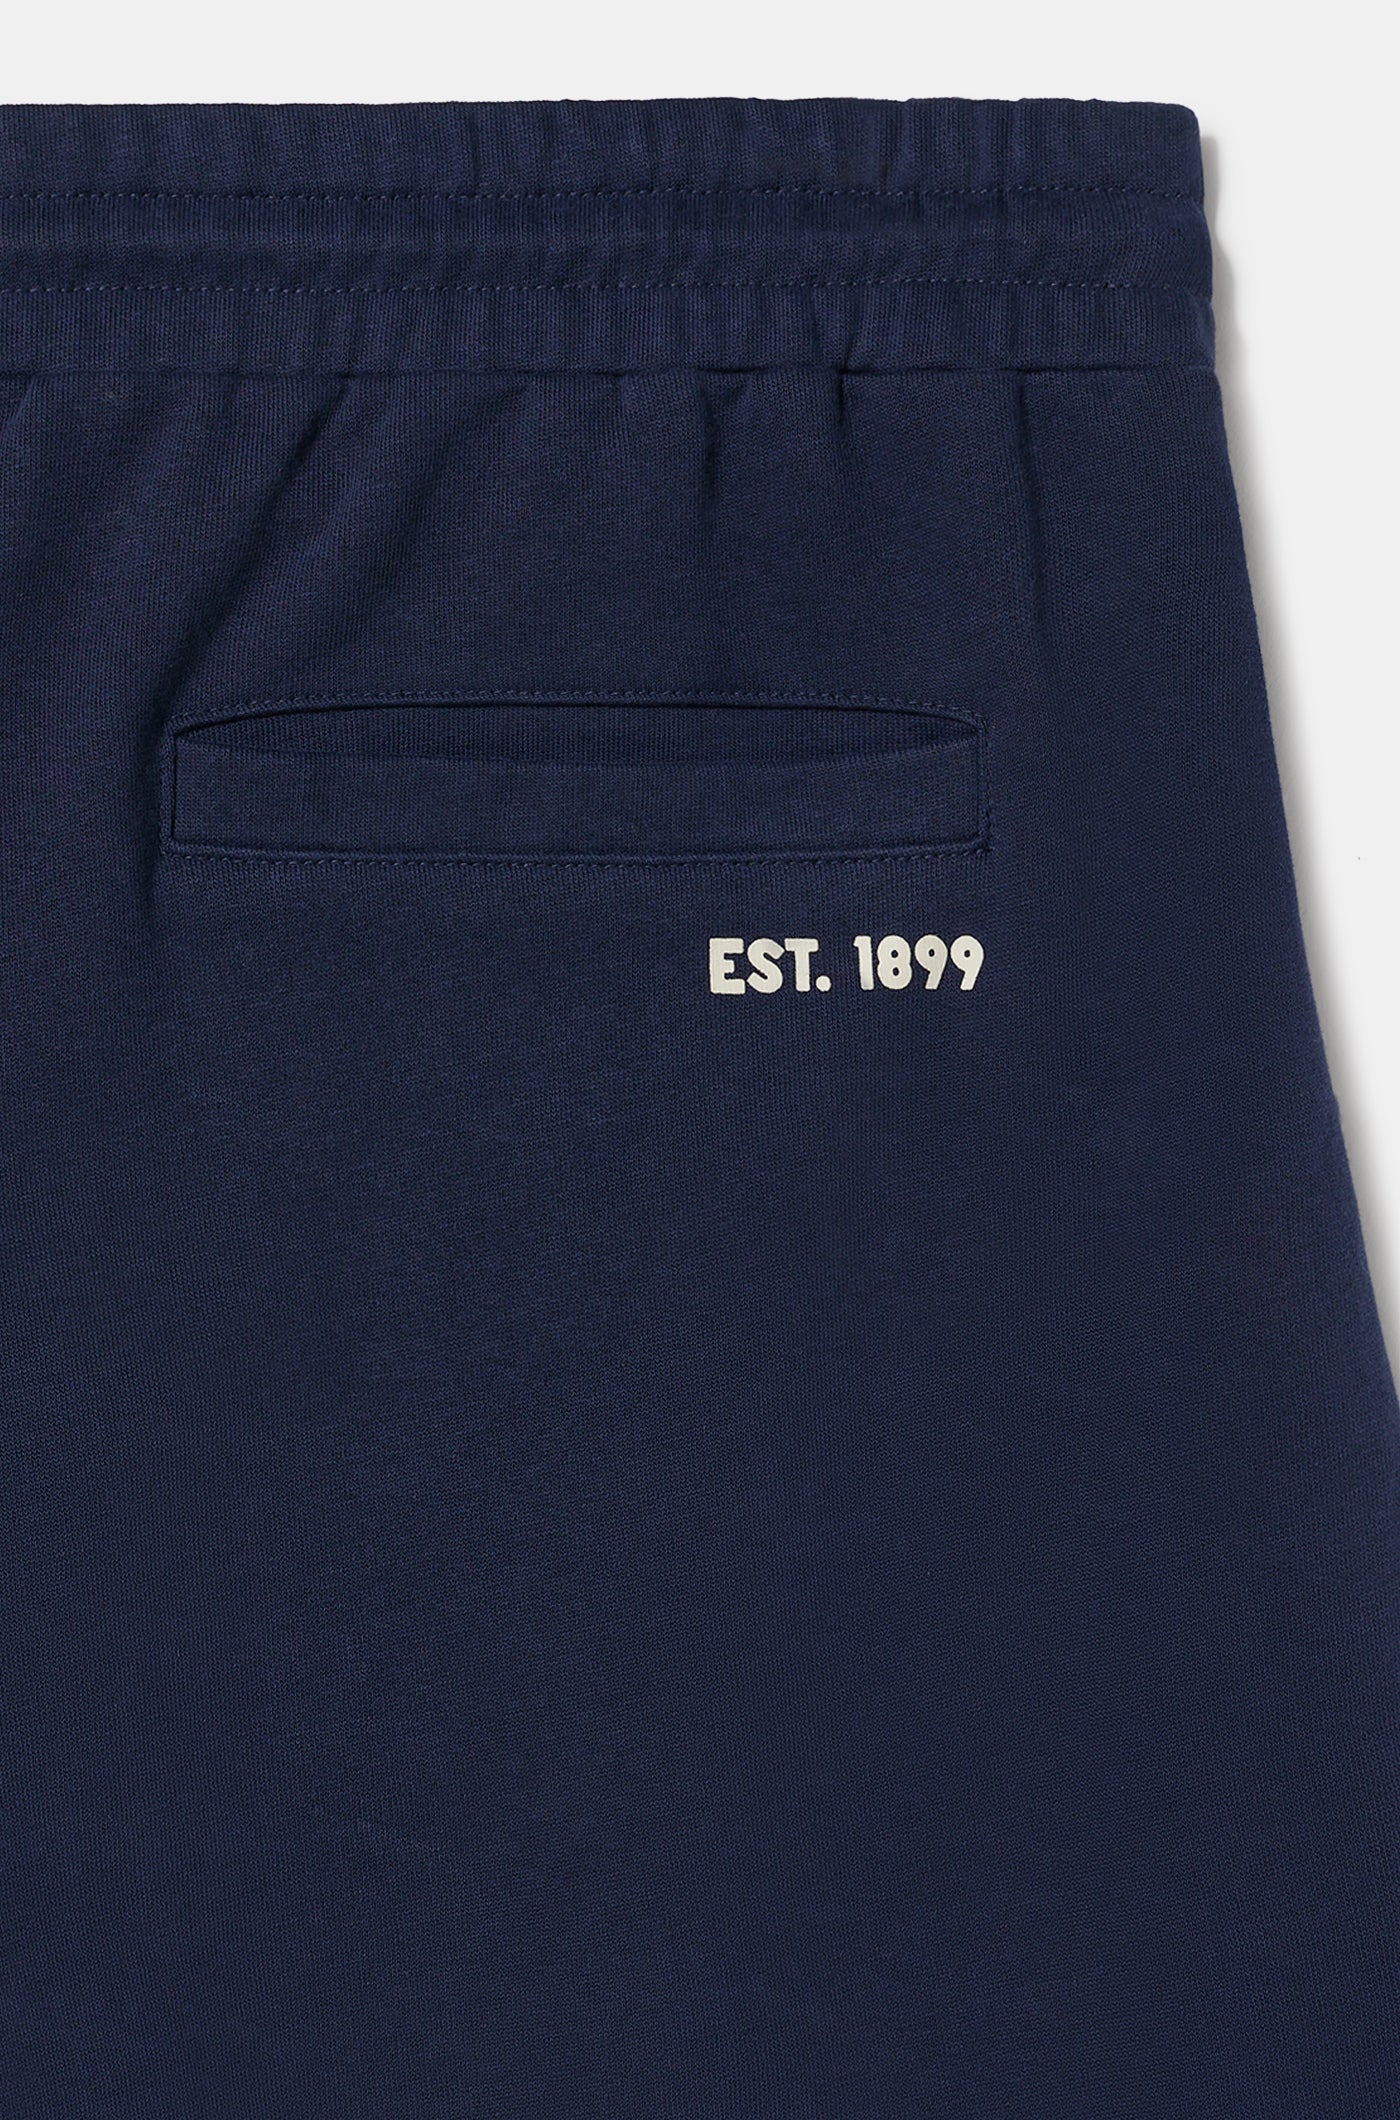 Pantalon de Survêtement Bleu Marine avec Emblème Barça 